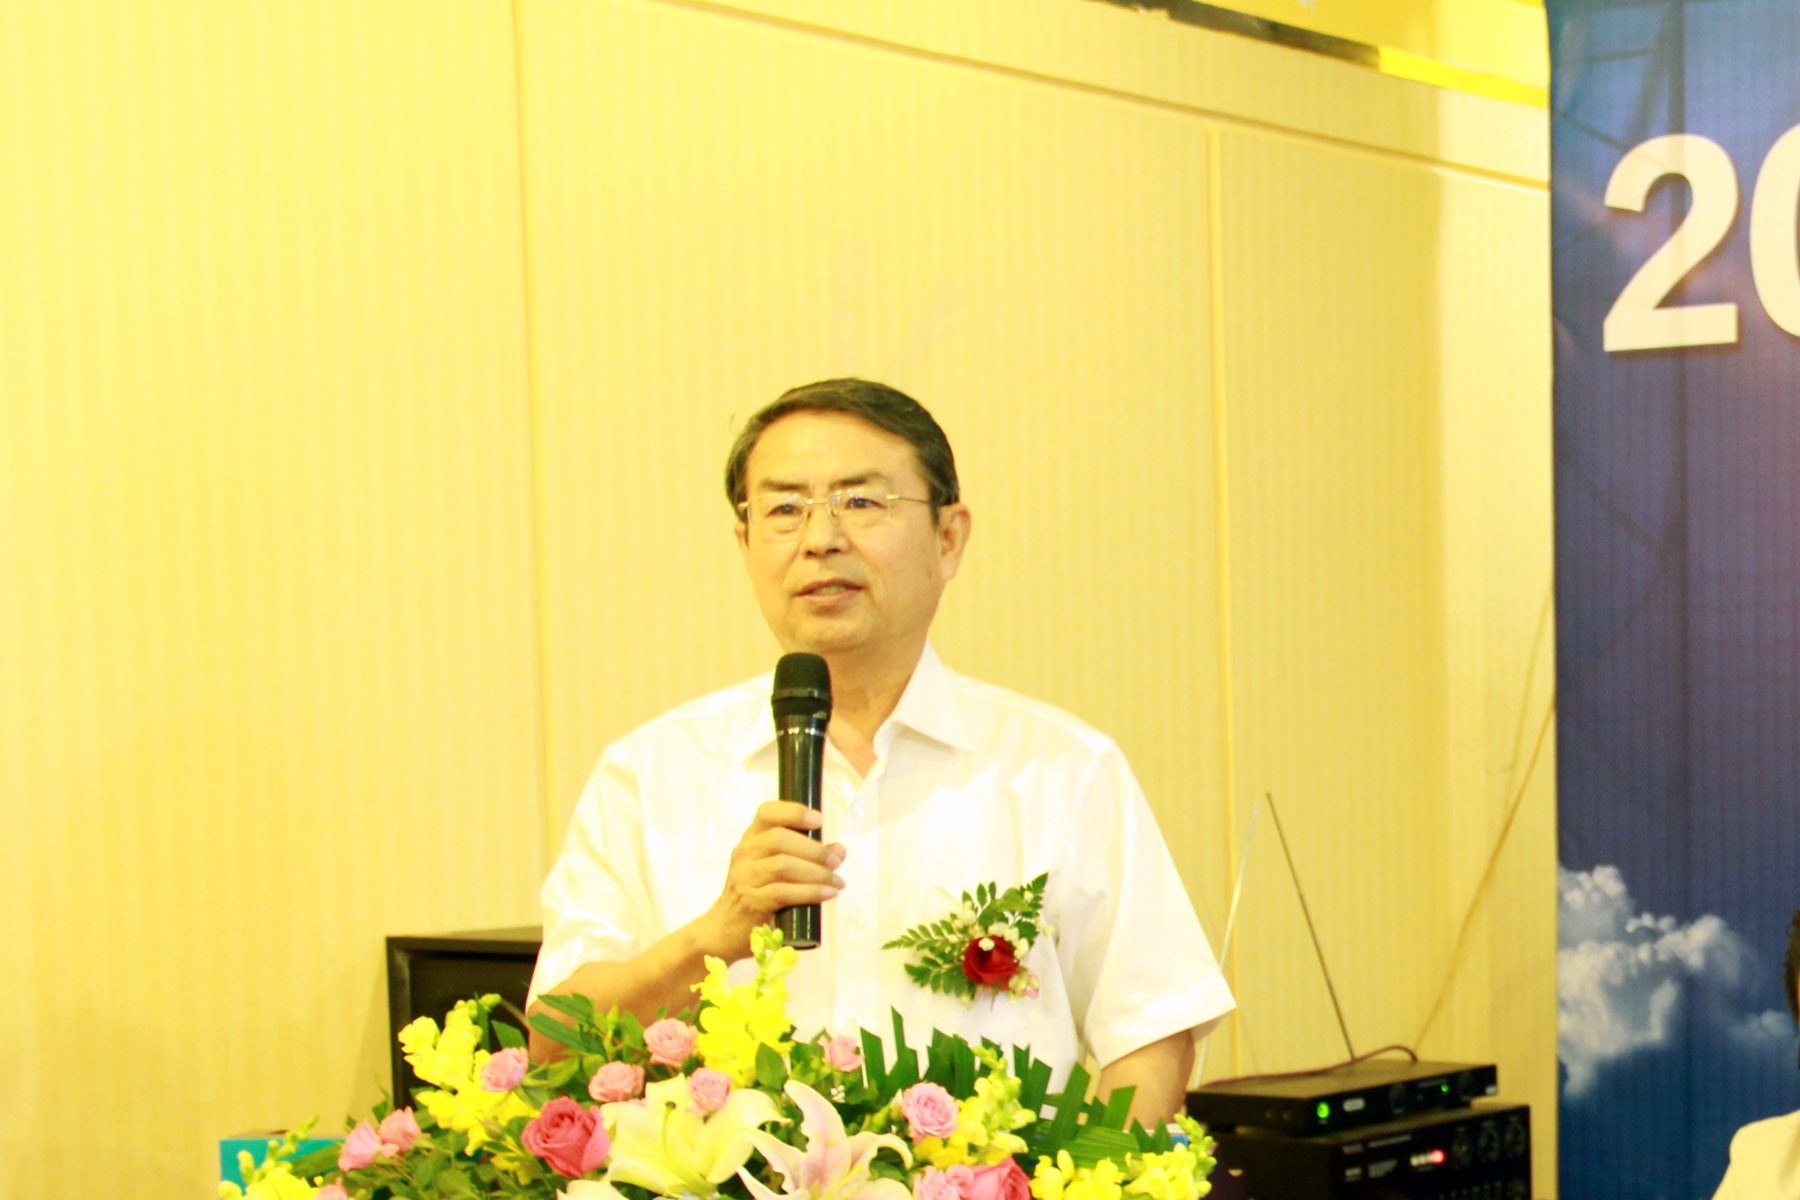 中國男性健康萬里行組委會主任張金鐘教授講話